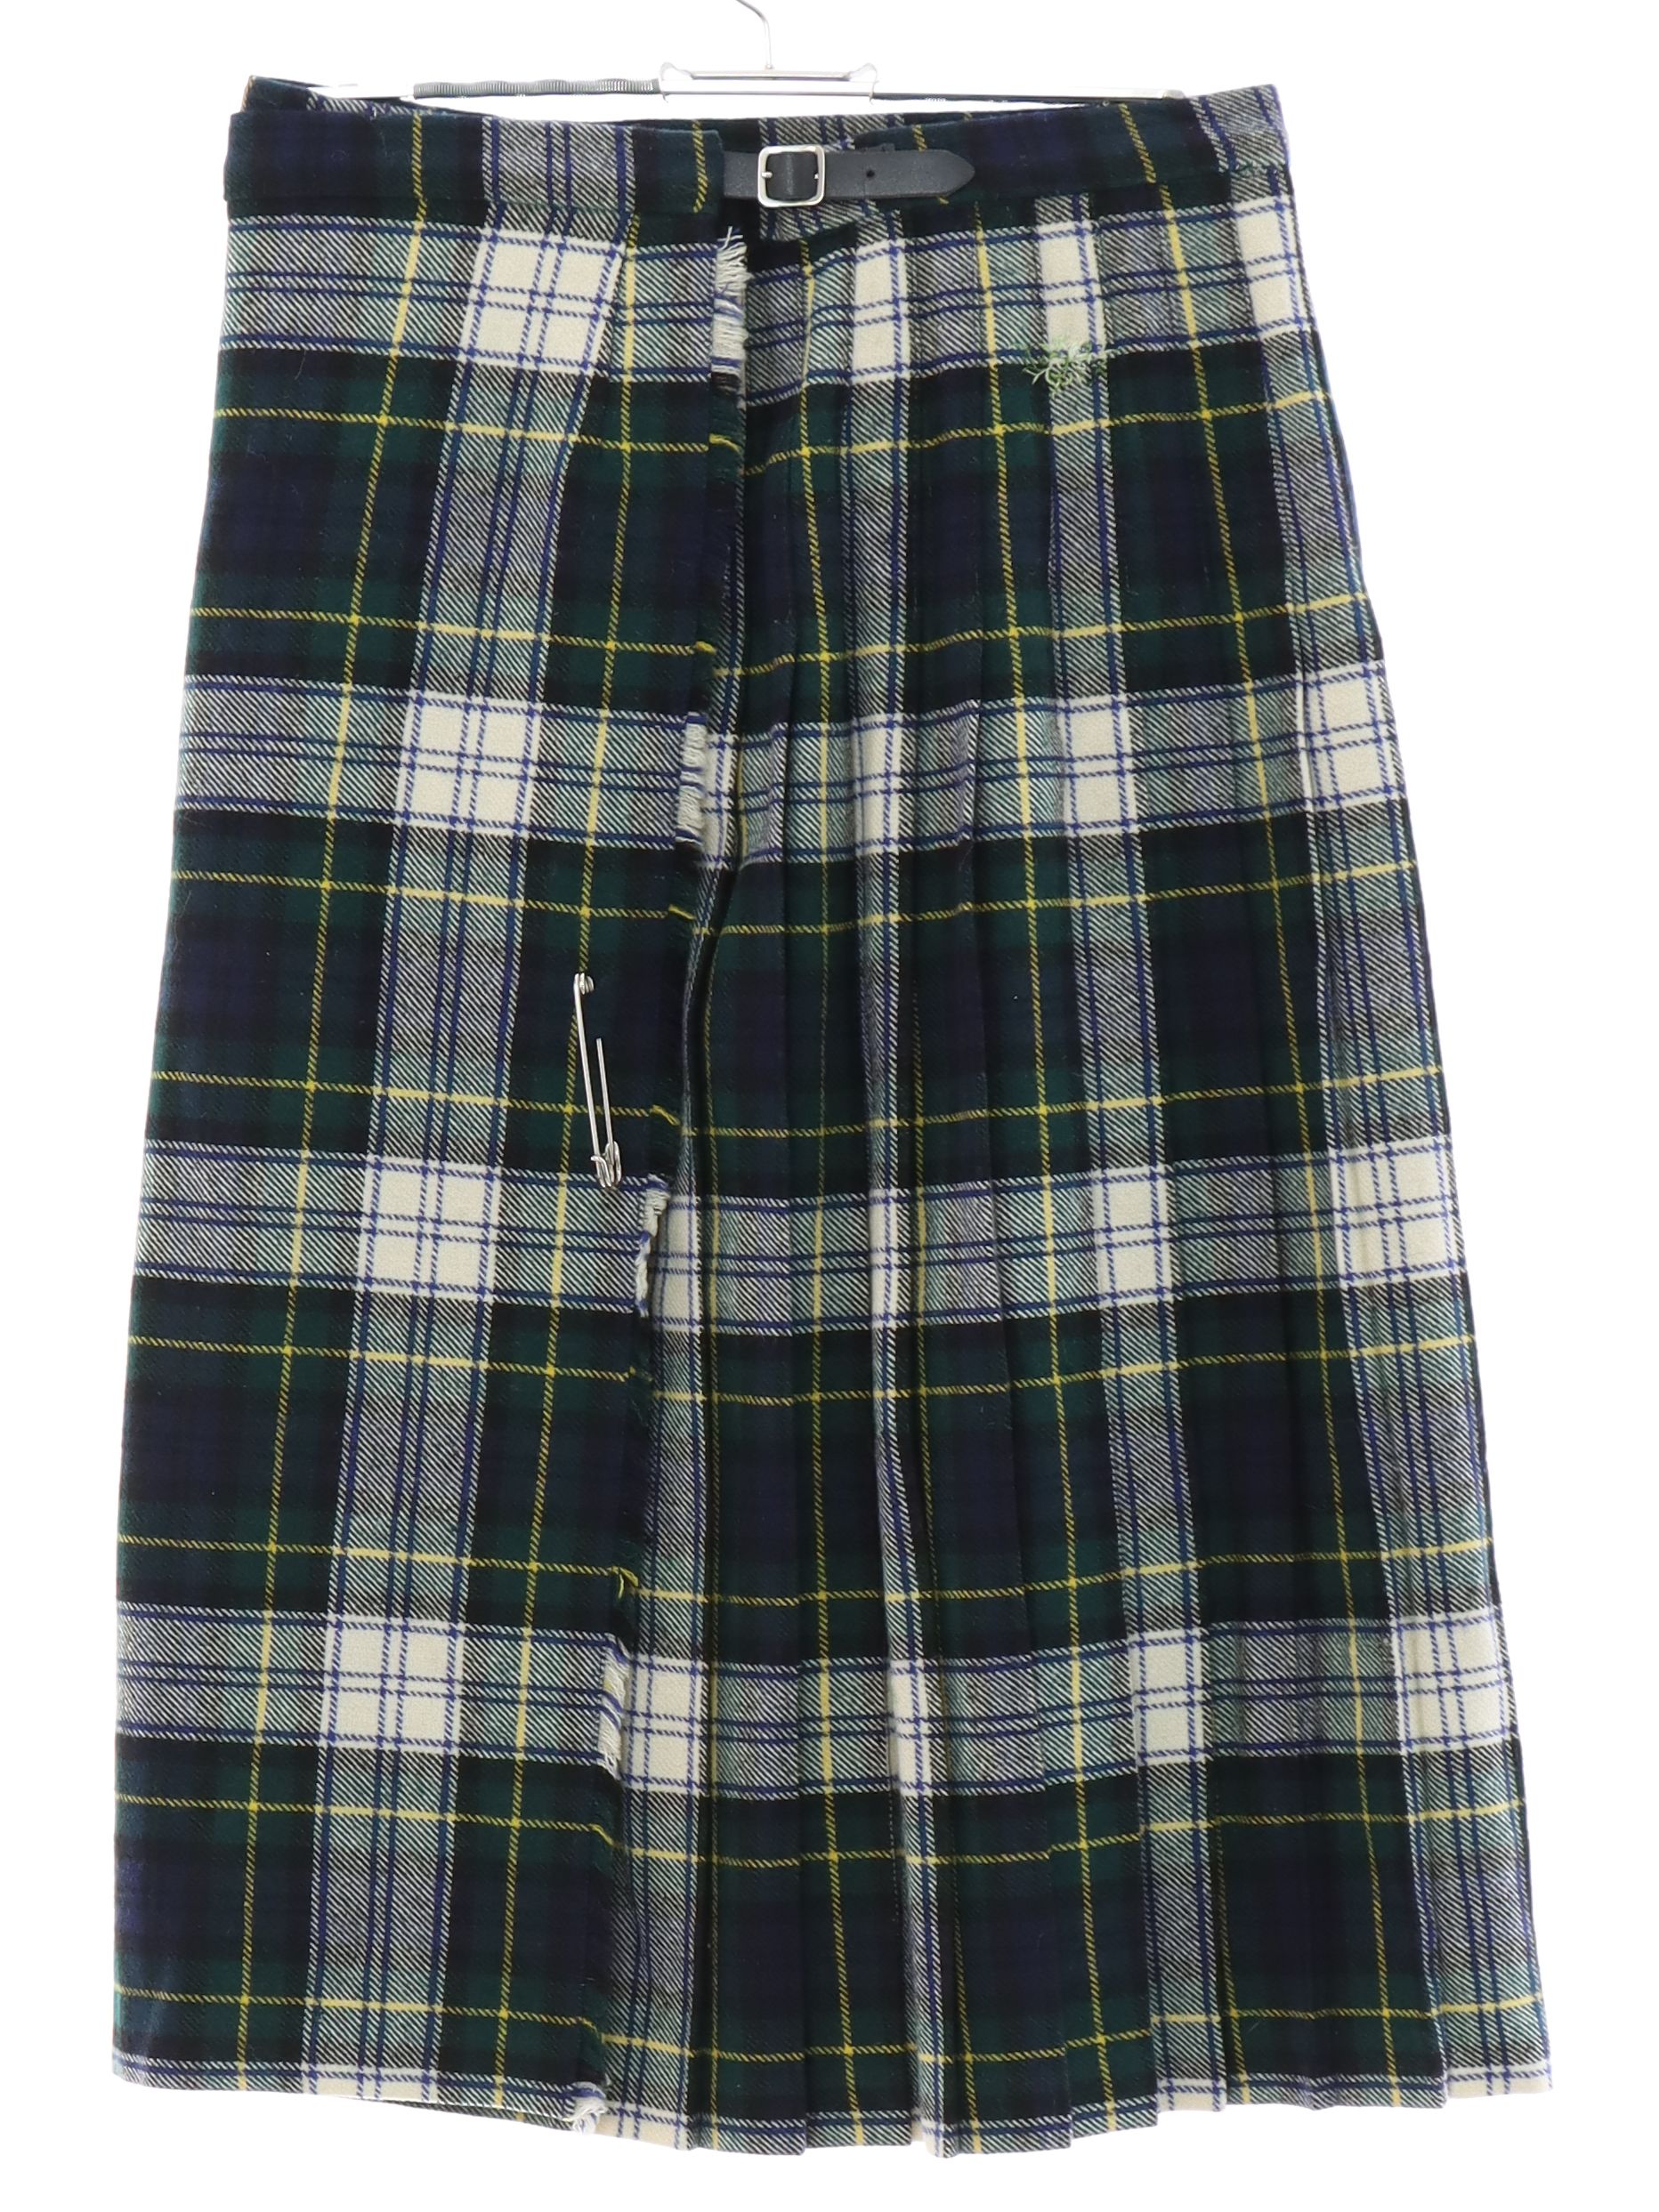 1970's Vintage Kenmore Scottish Wool Plaid Skirt: 70s -Kenmore Scottish ...